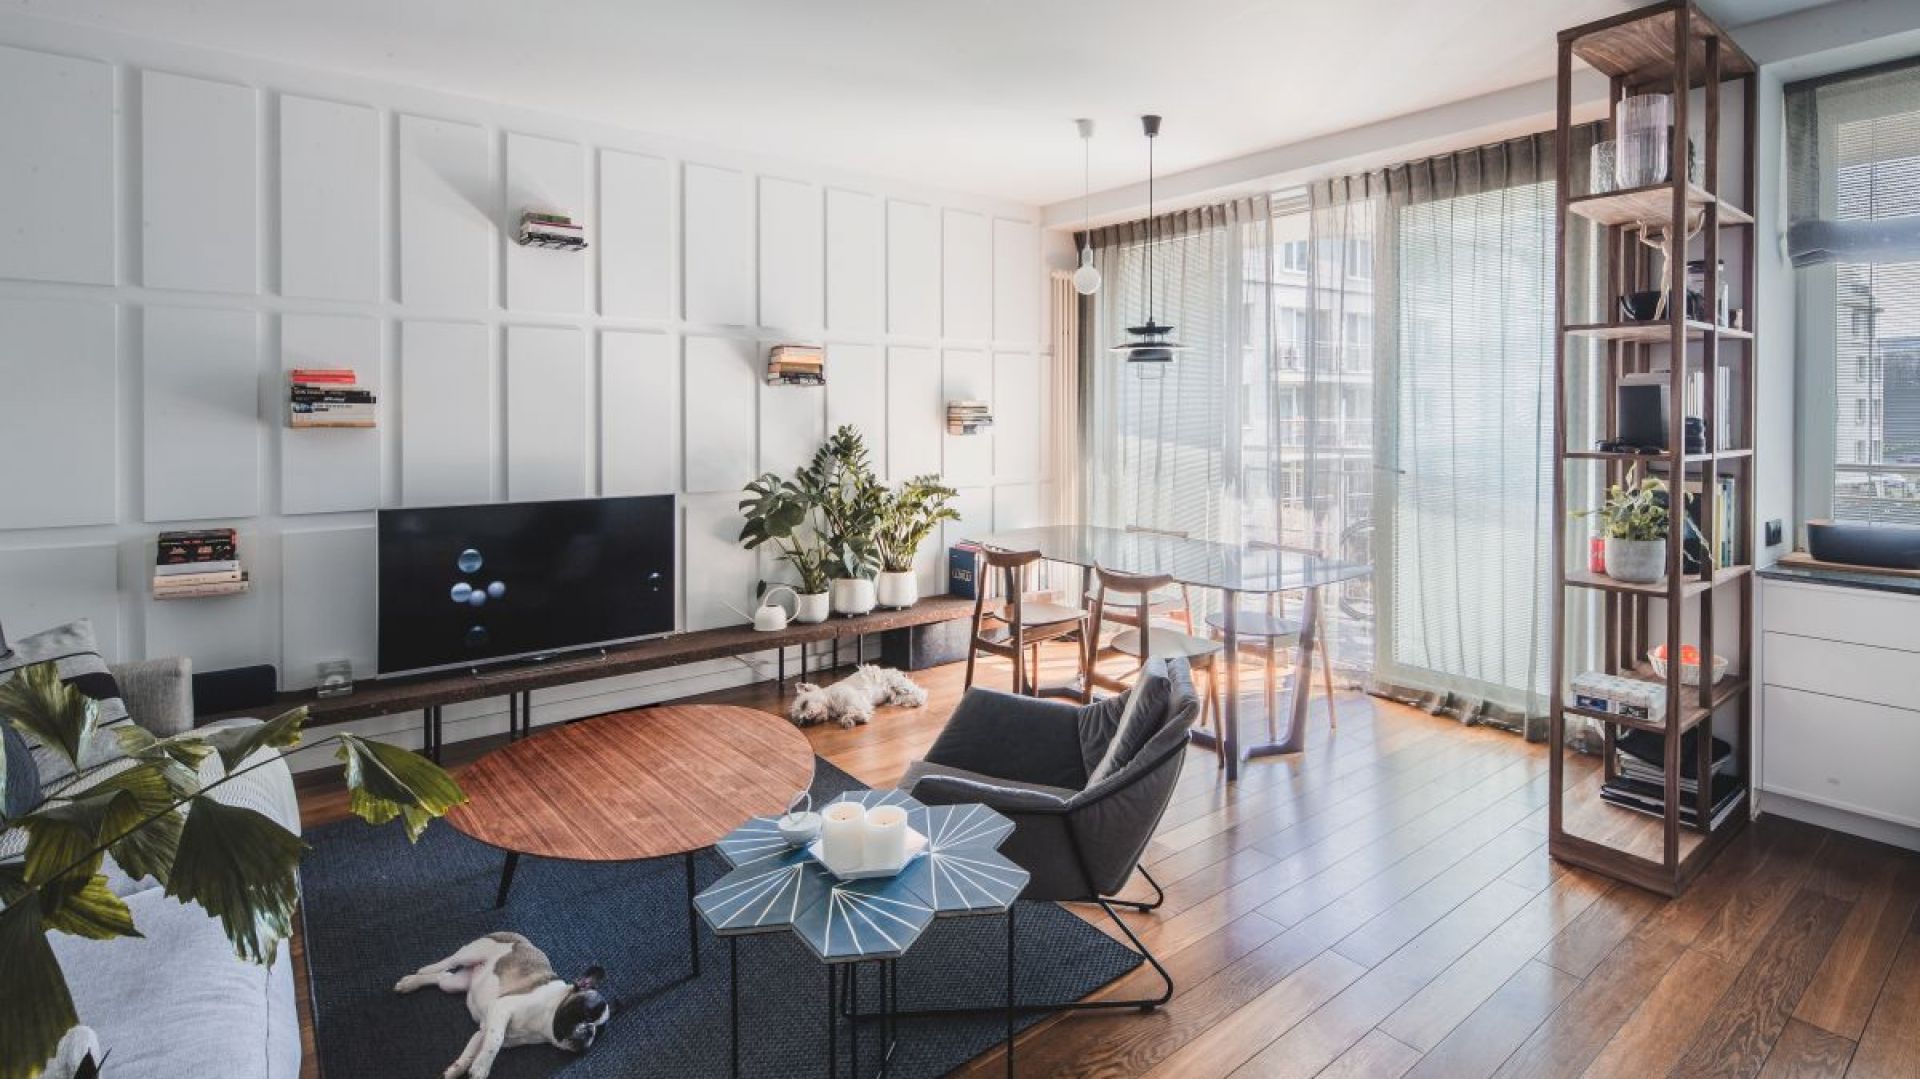 Odnajdź spokój w przytulnym minimalizmie warszawskiego apartamentowca